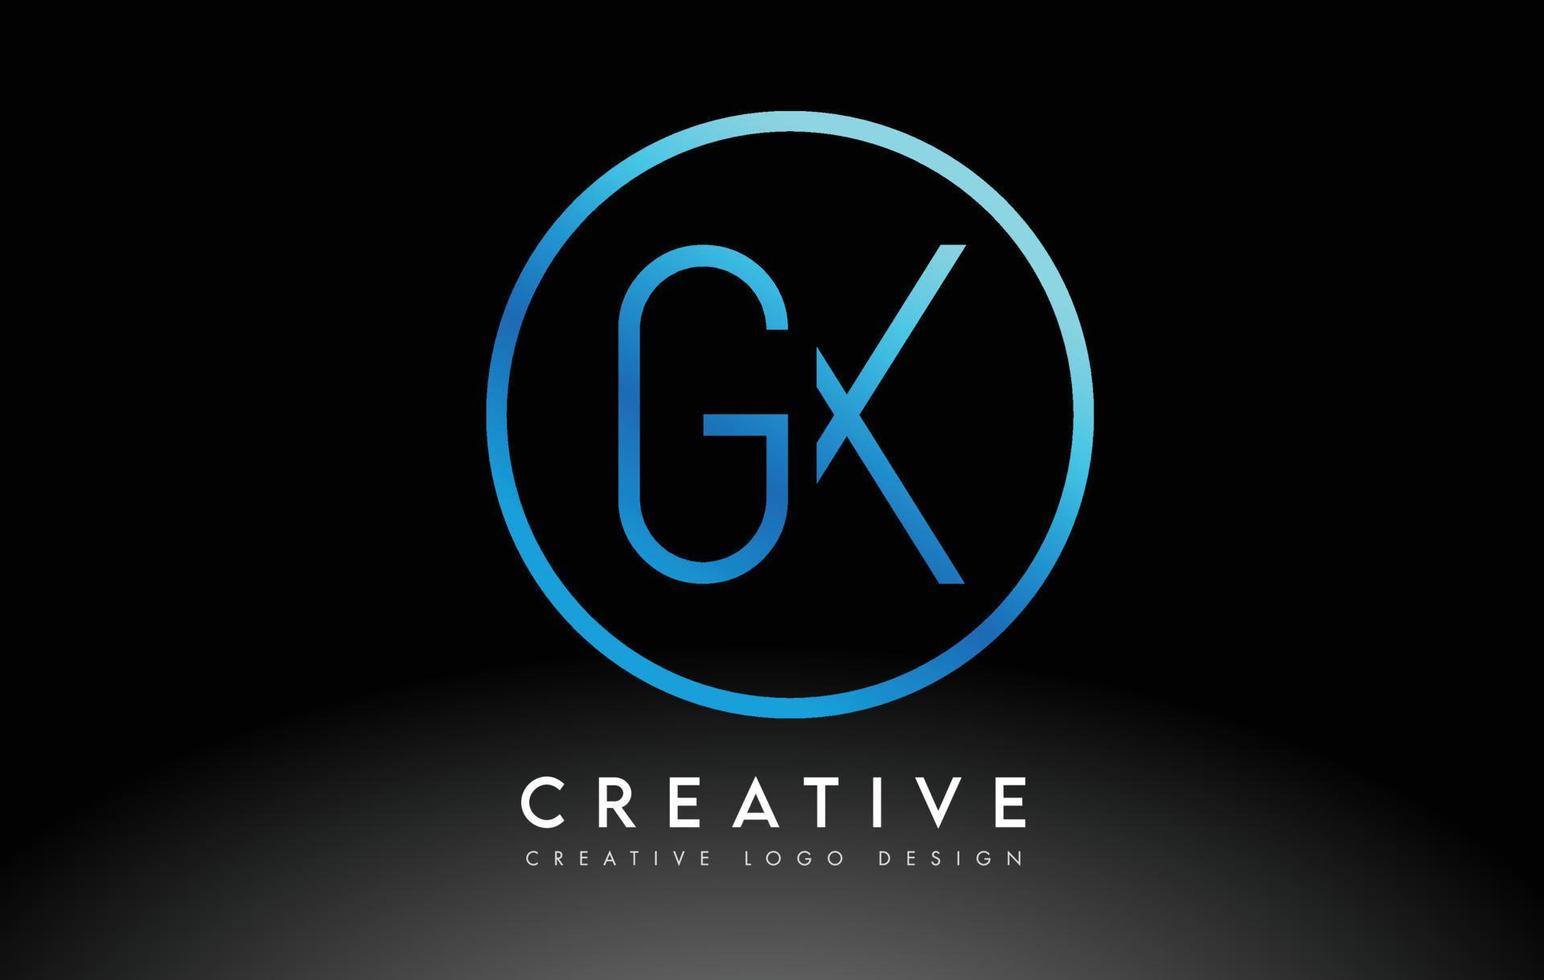 diseño de logotipo de letras gx azul neón delgado. concepto creativo simple carta limpia. vector